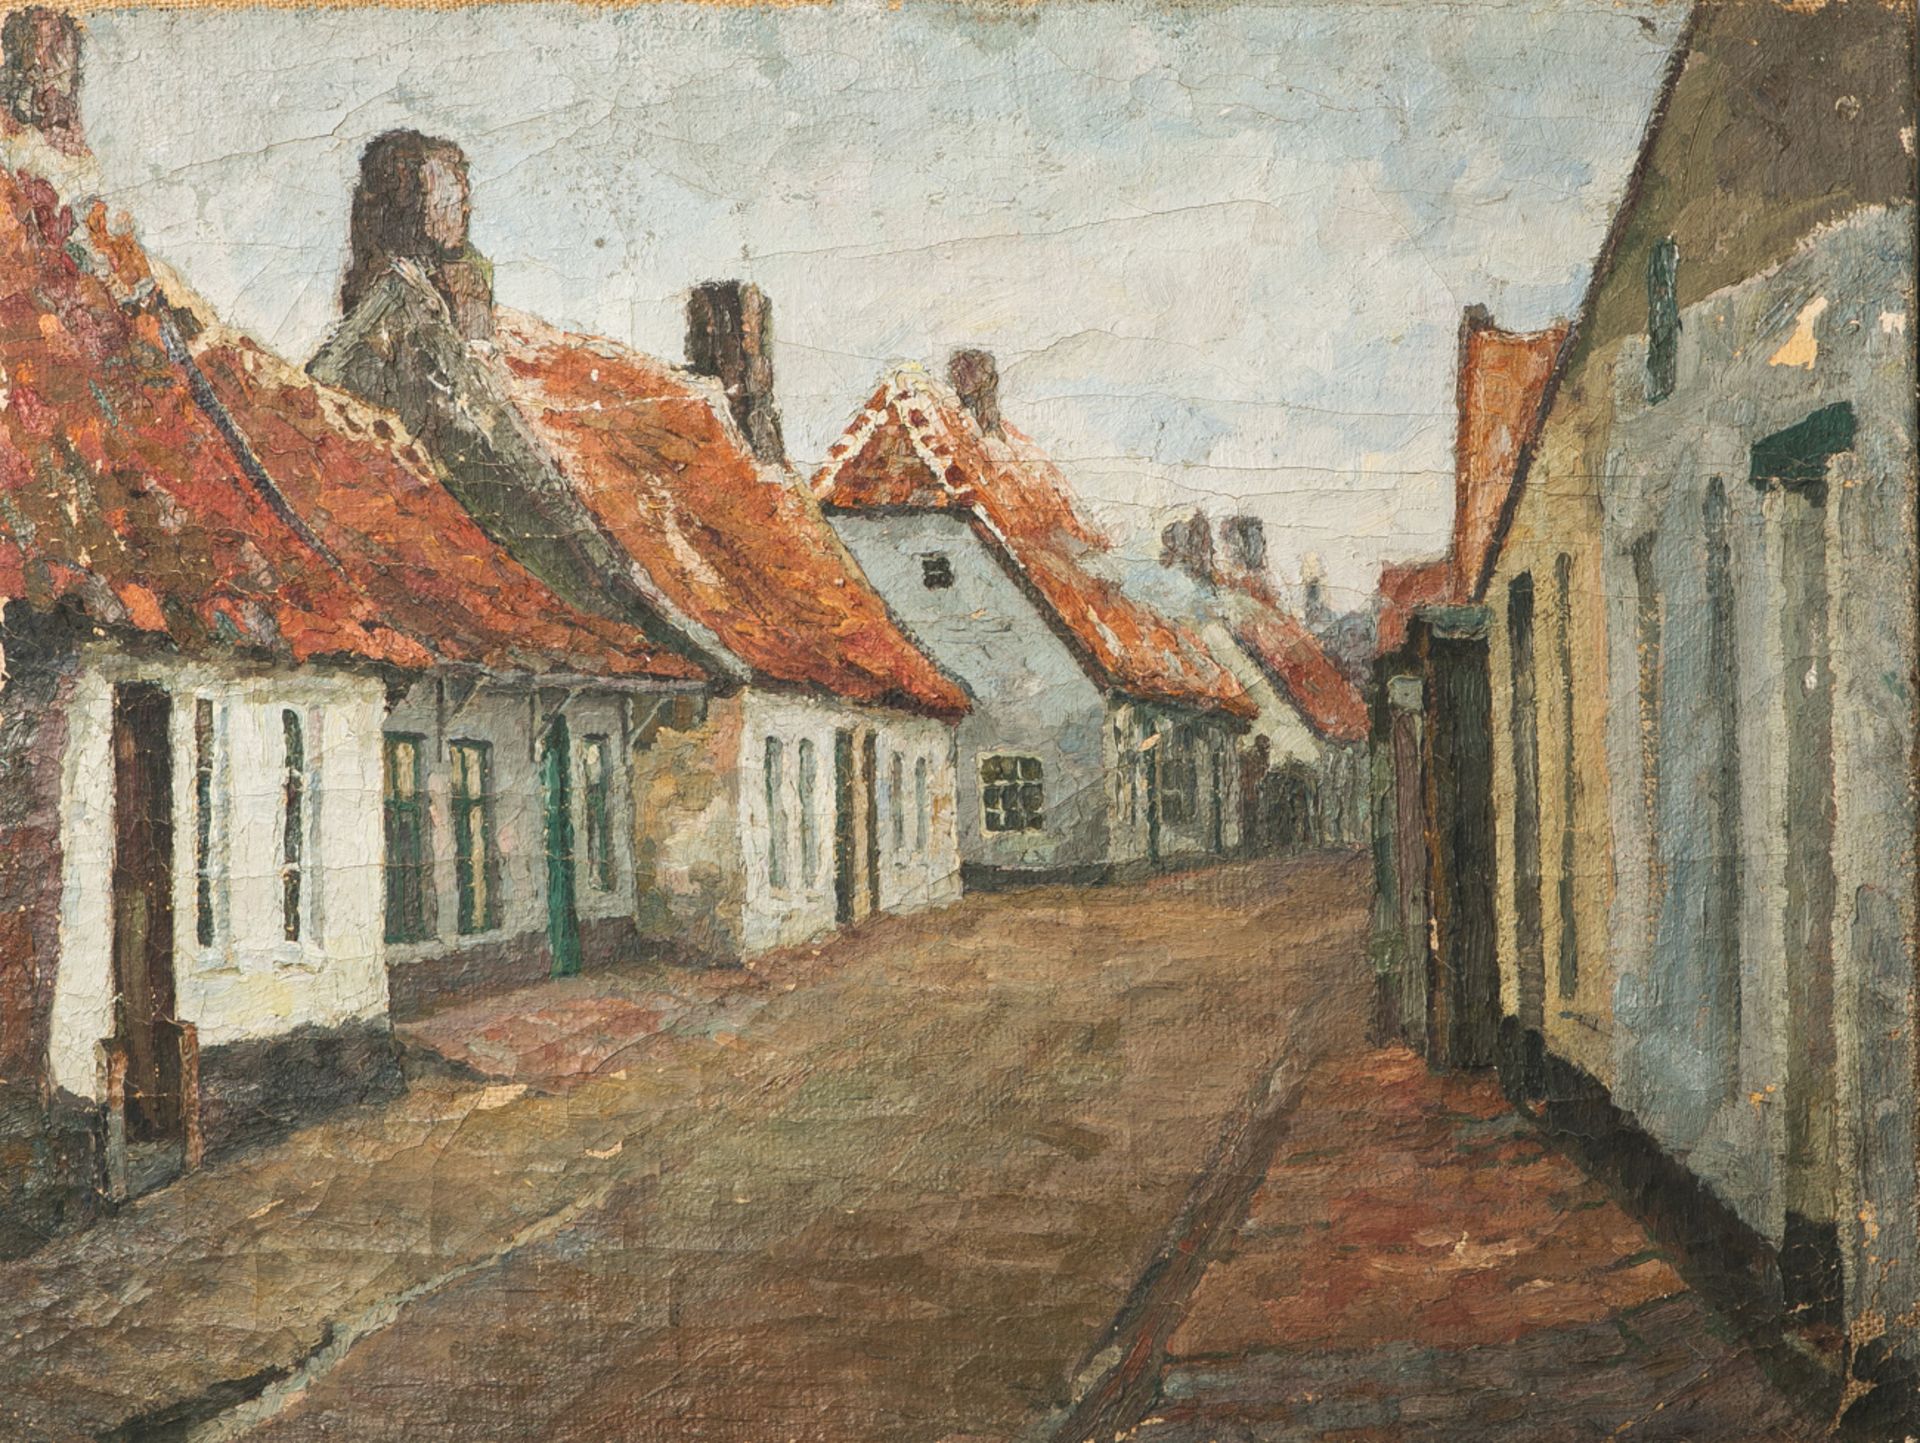 Unbekannter Künstler (wohl um 1900/20), Dorfstraße mit Häusern, Öl auf Leinwand, ca. 48 x